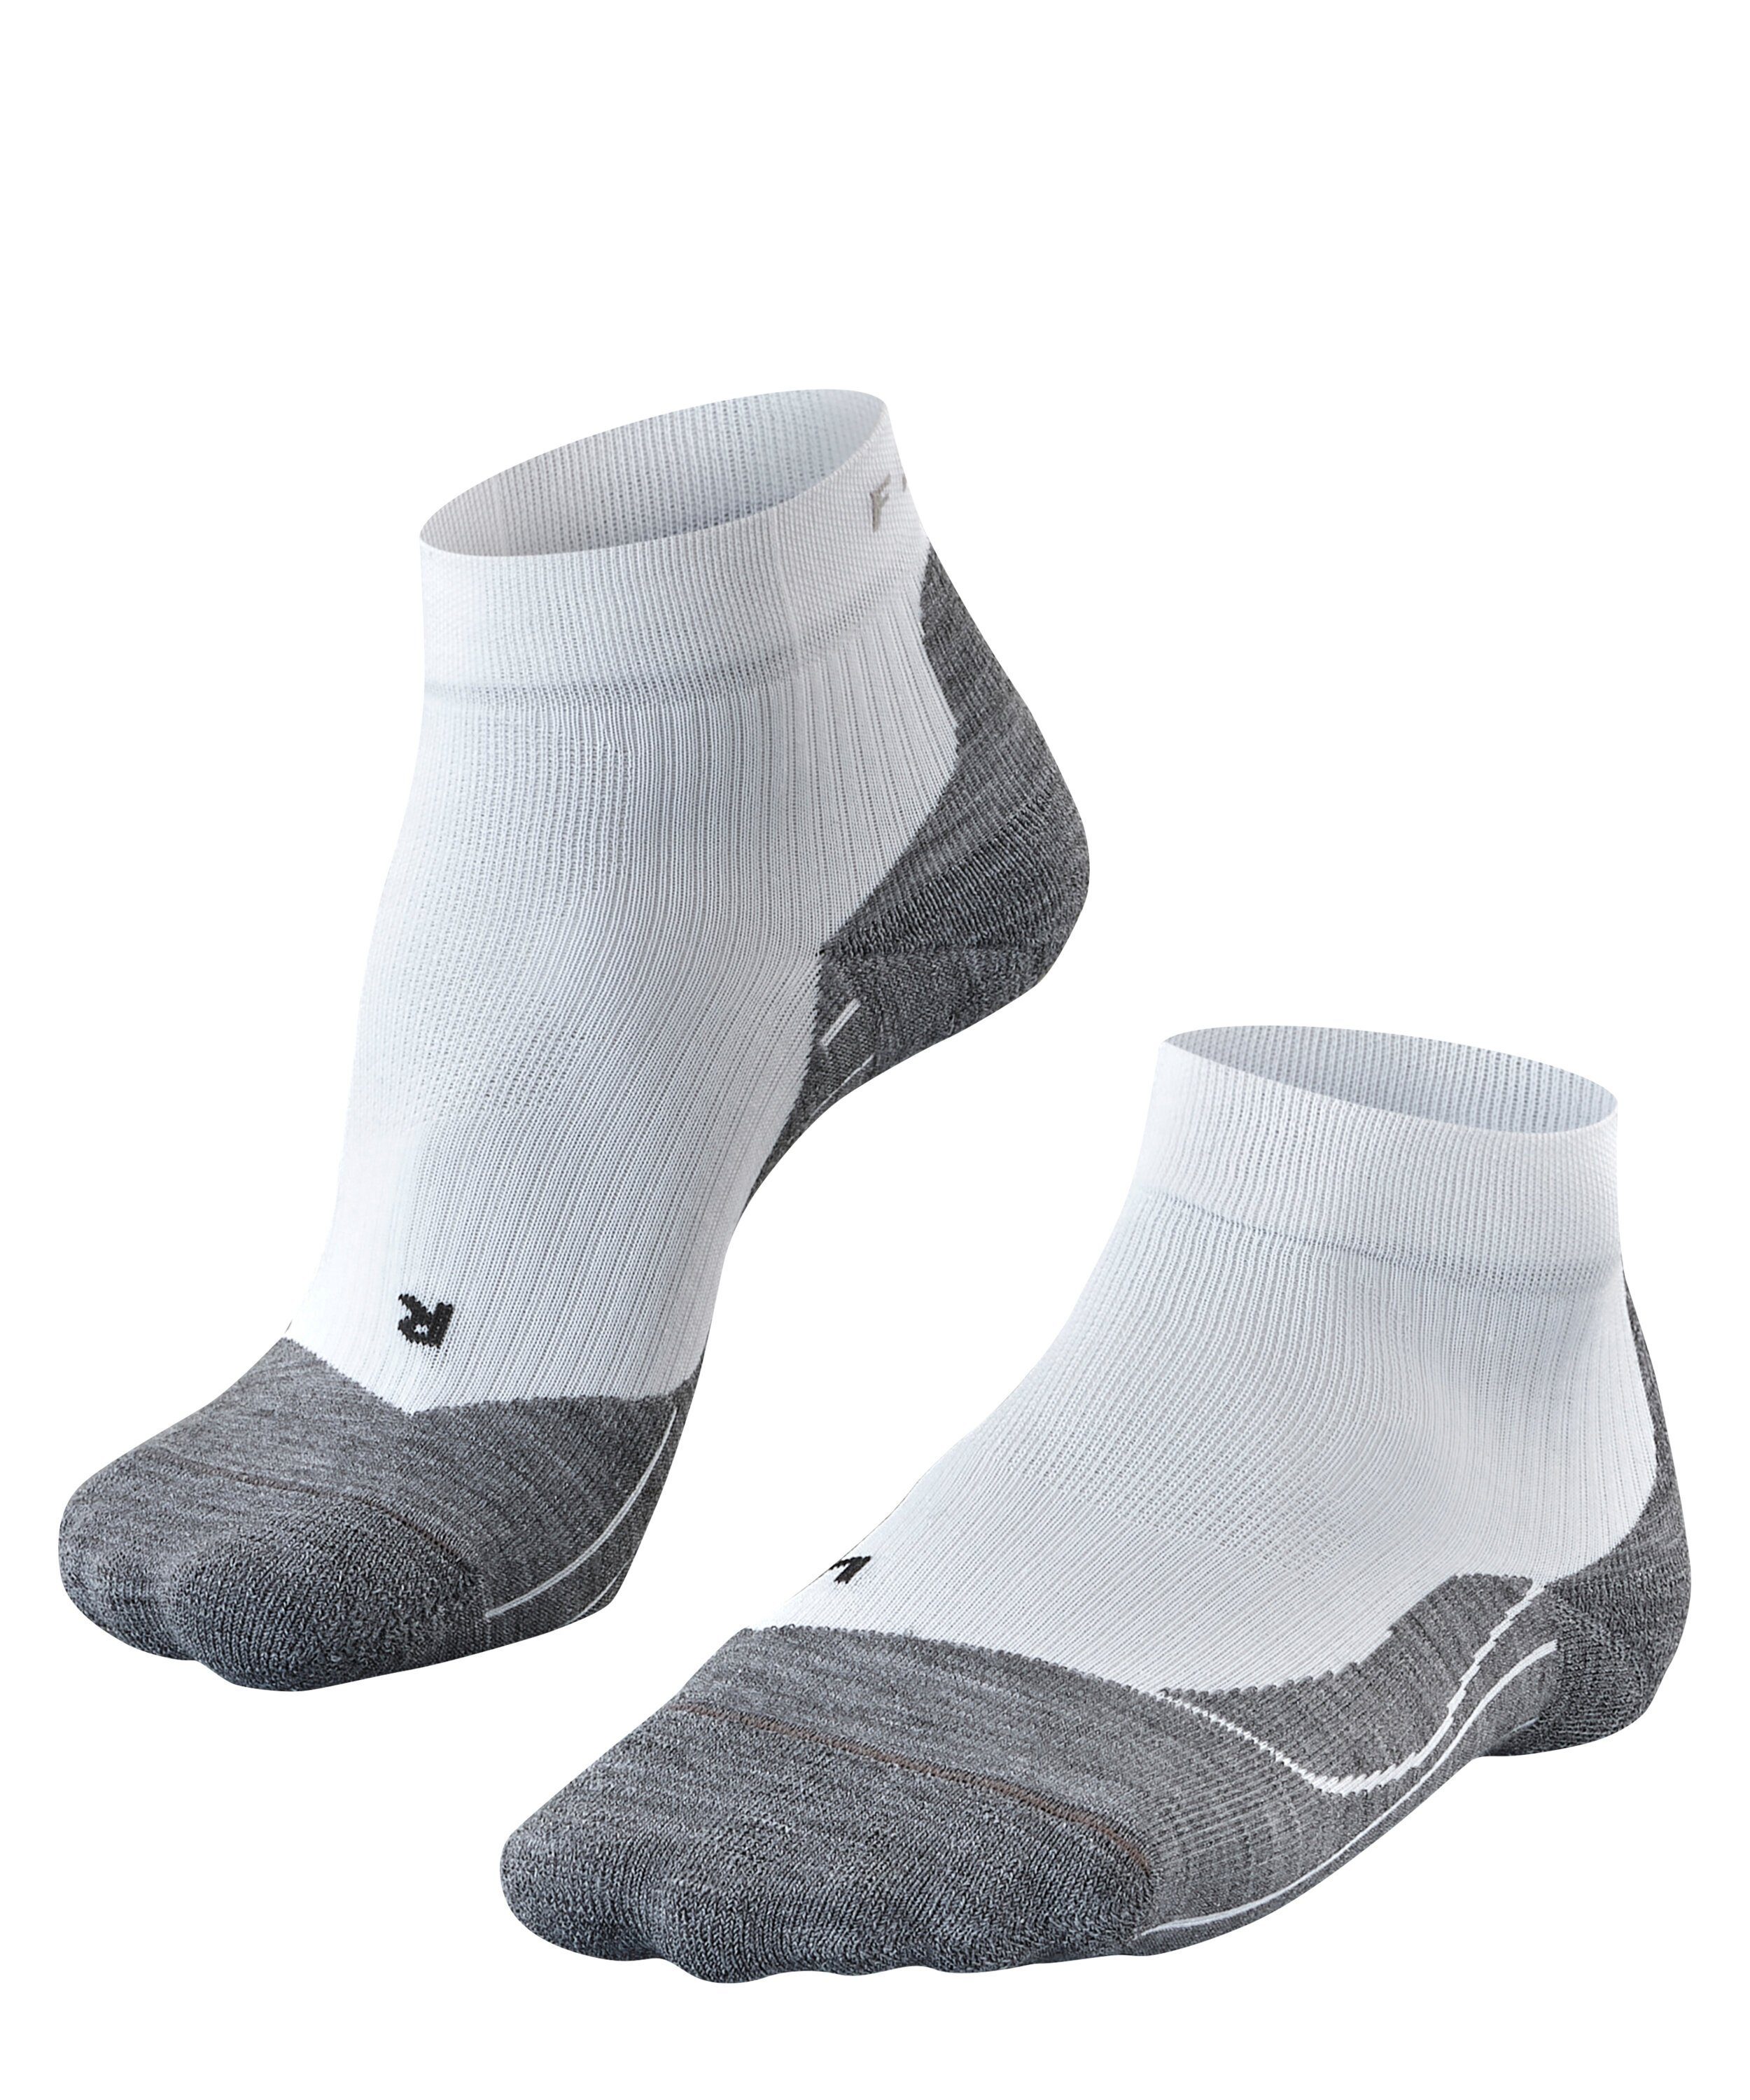 FALKE Tennissocken TE 4 Short (1-Paar) Stabilisierende Socken für Sandplätze white-mix (2020)